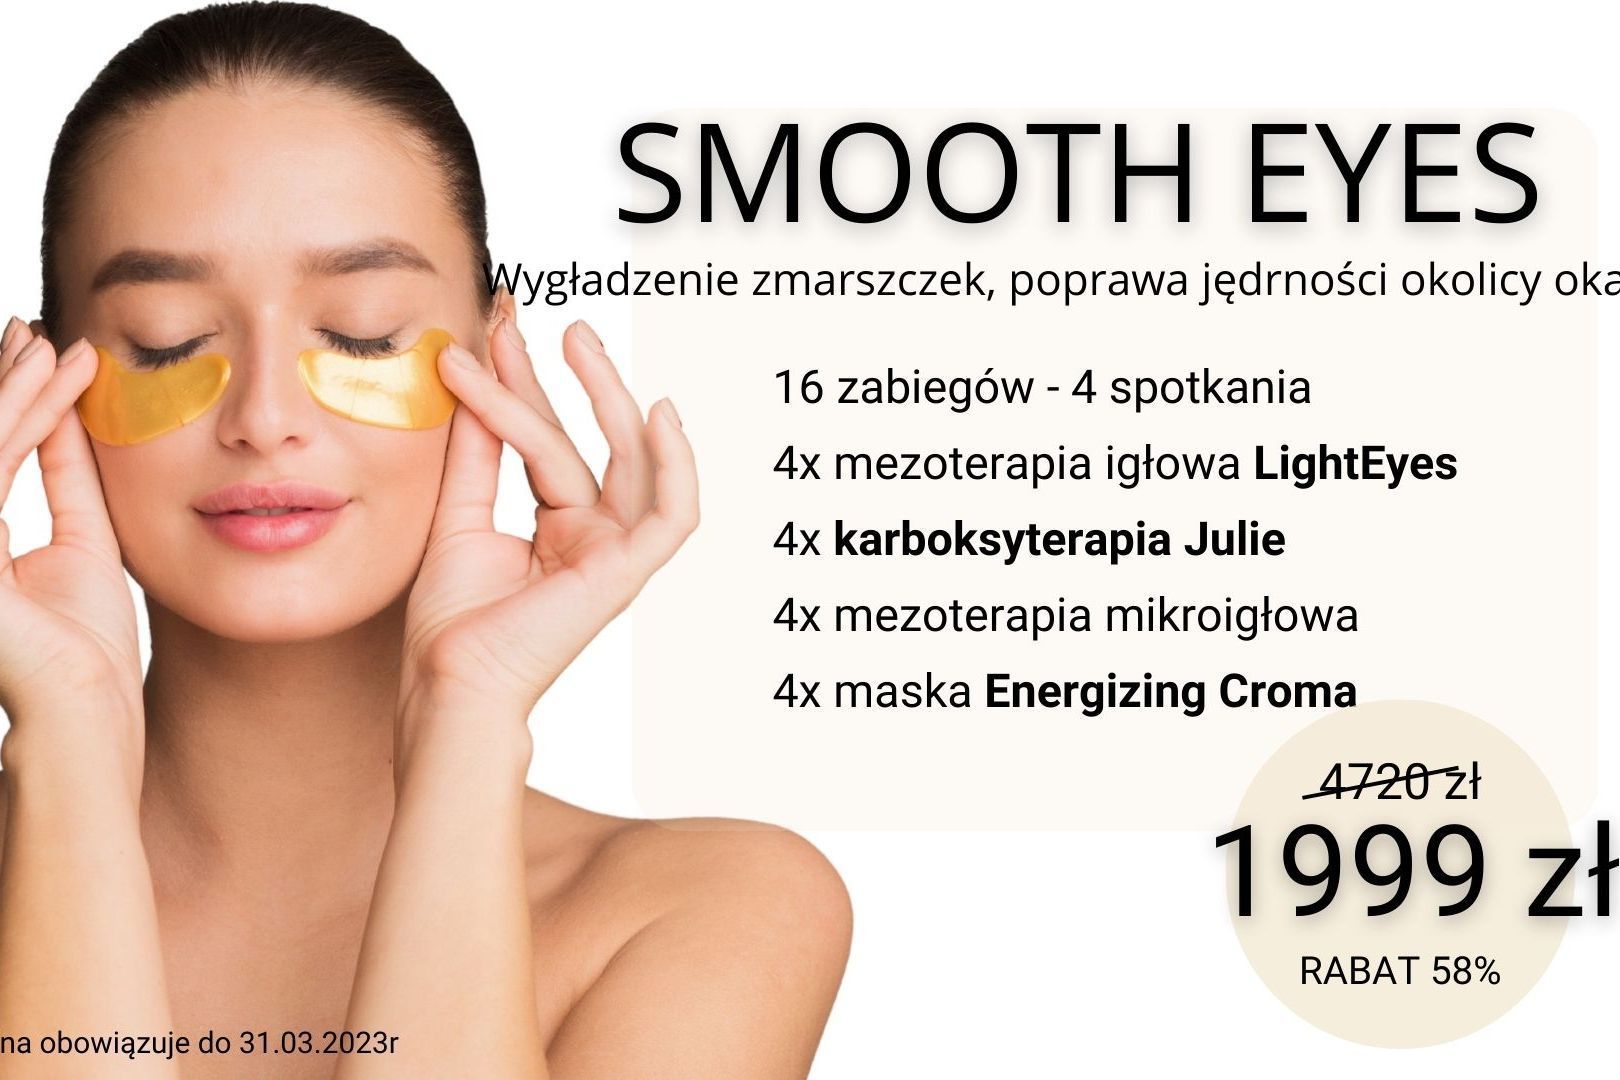 Portfolio usługi SMOOTH EYES - zagęszczenie skóry okolicy oka!